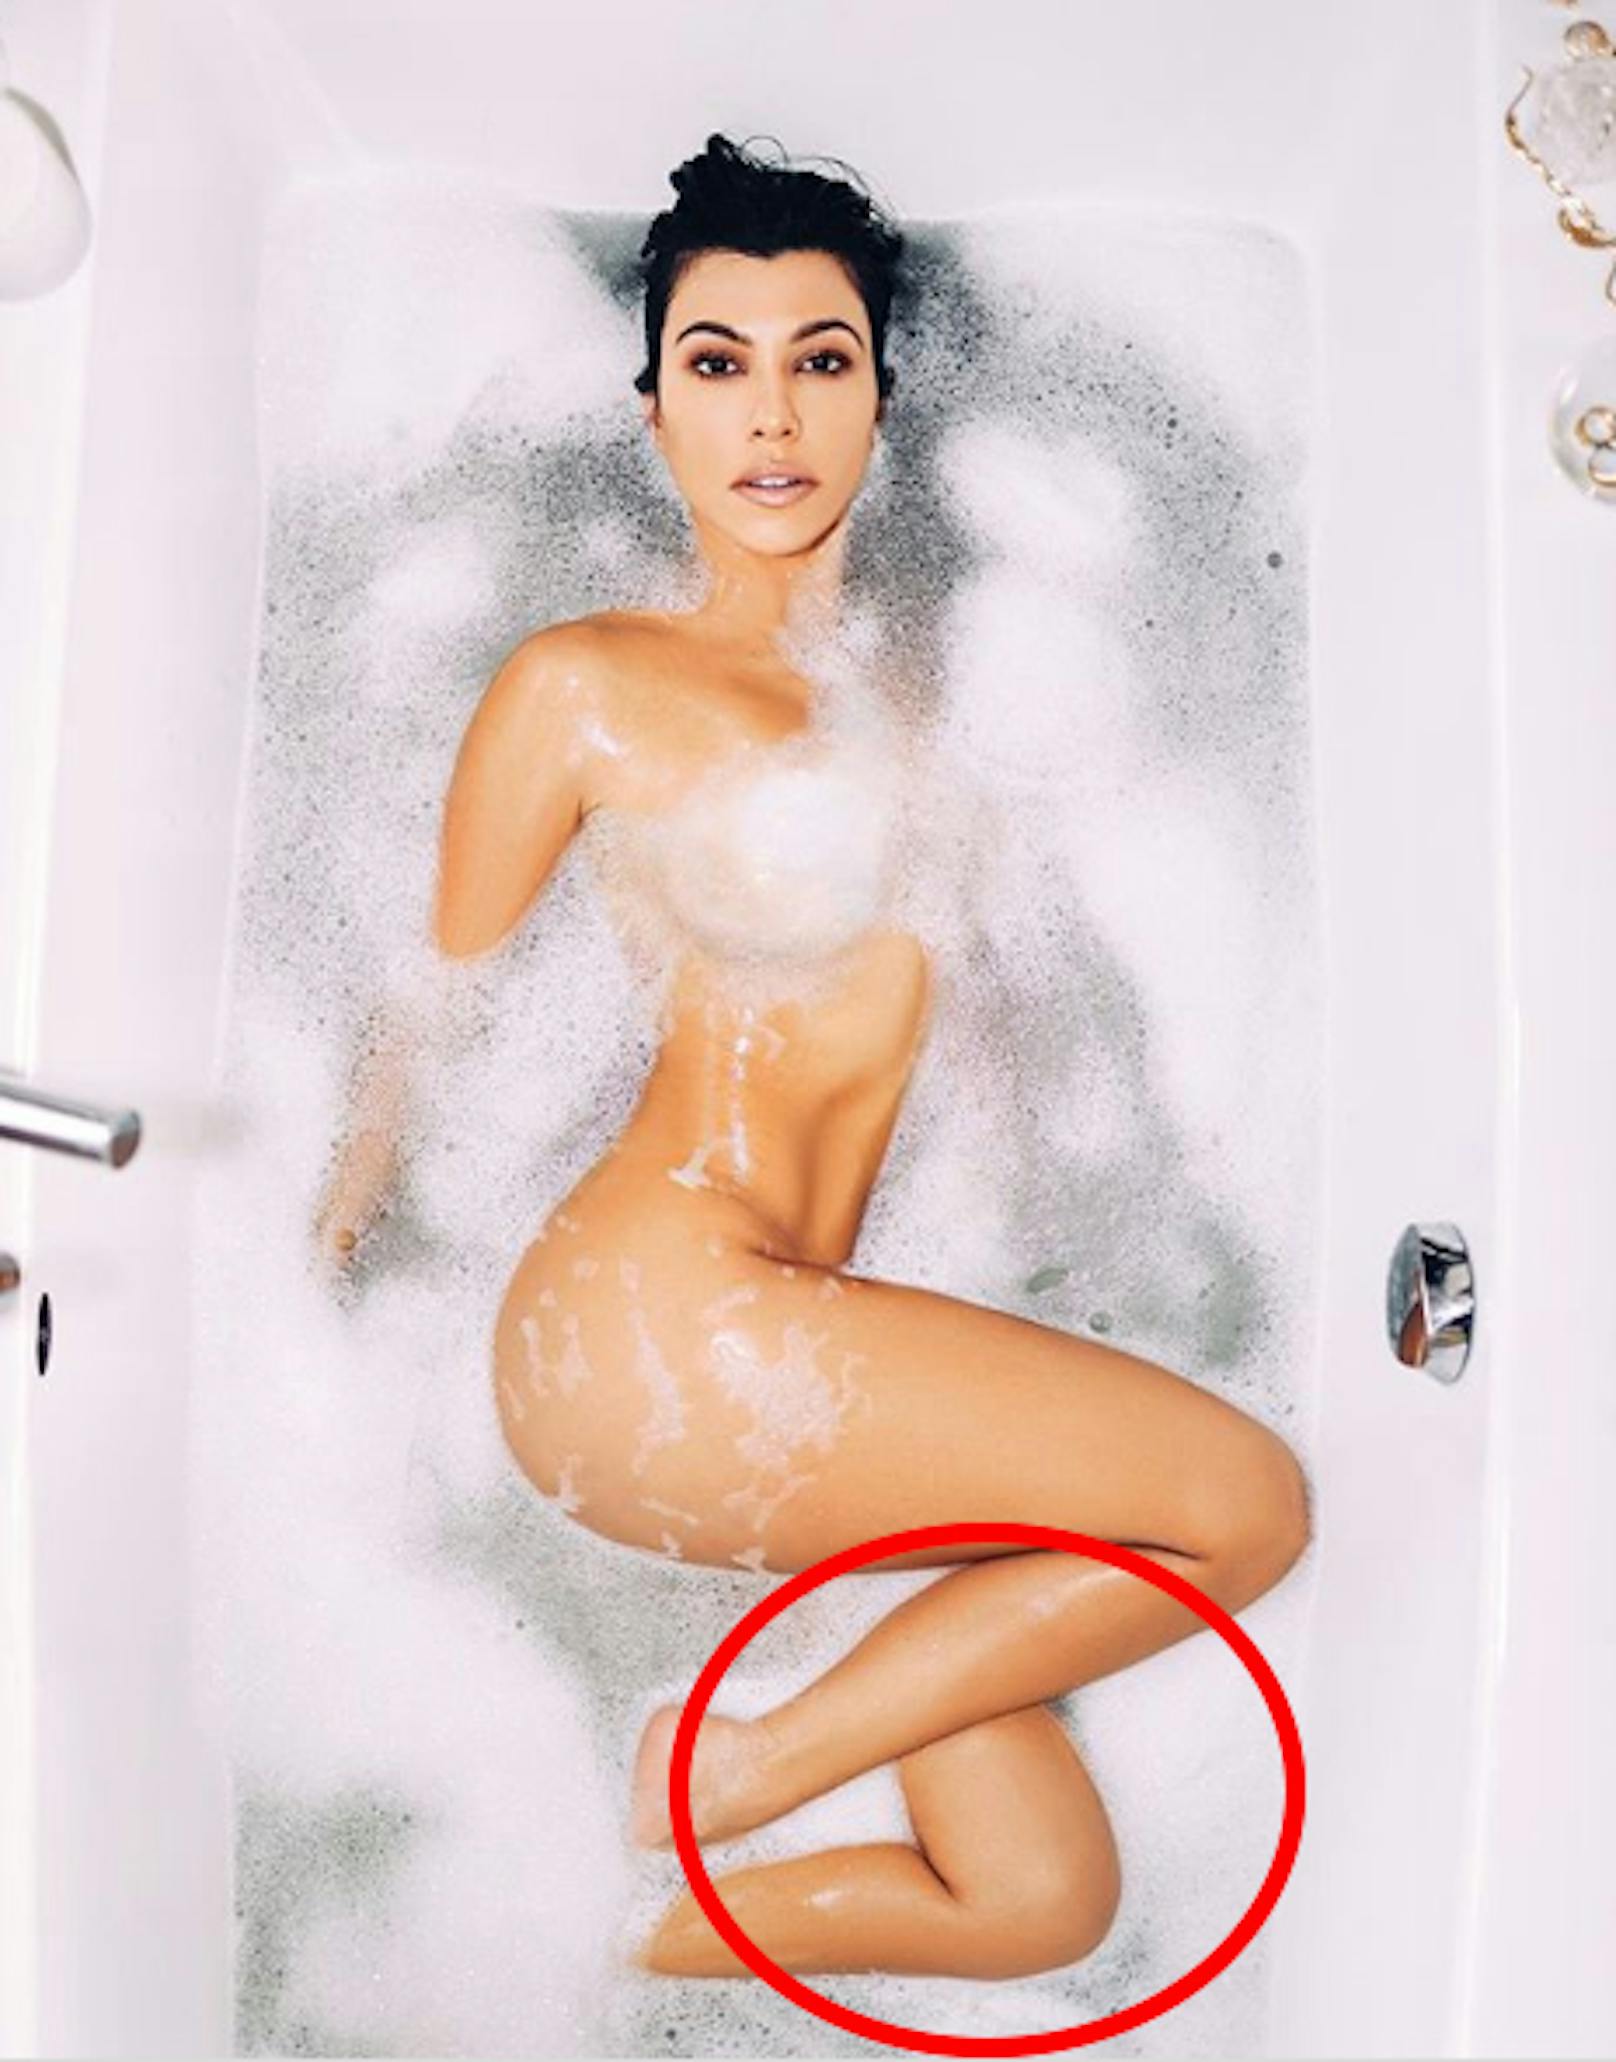 Kourtney  Kardashian wollte sich zwar ohne Wäsche, aber nicht ohne Nachbearbeitung zeigen. Das ihr jetzt das Bein aus dem Unterschenkel wächst, amüsierte ihre Fans und ist weit Aufsehen erregender als ihre Bauchmuskeln. Ob die echt sind, kann man bei dieser Photoshop-Leistung nicht genau wissen